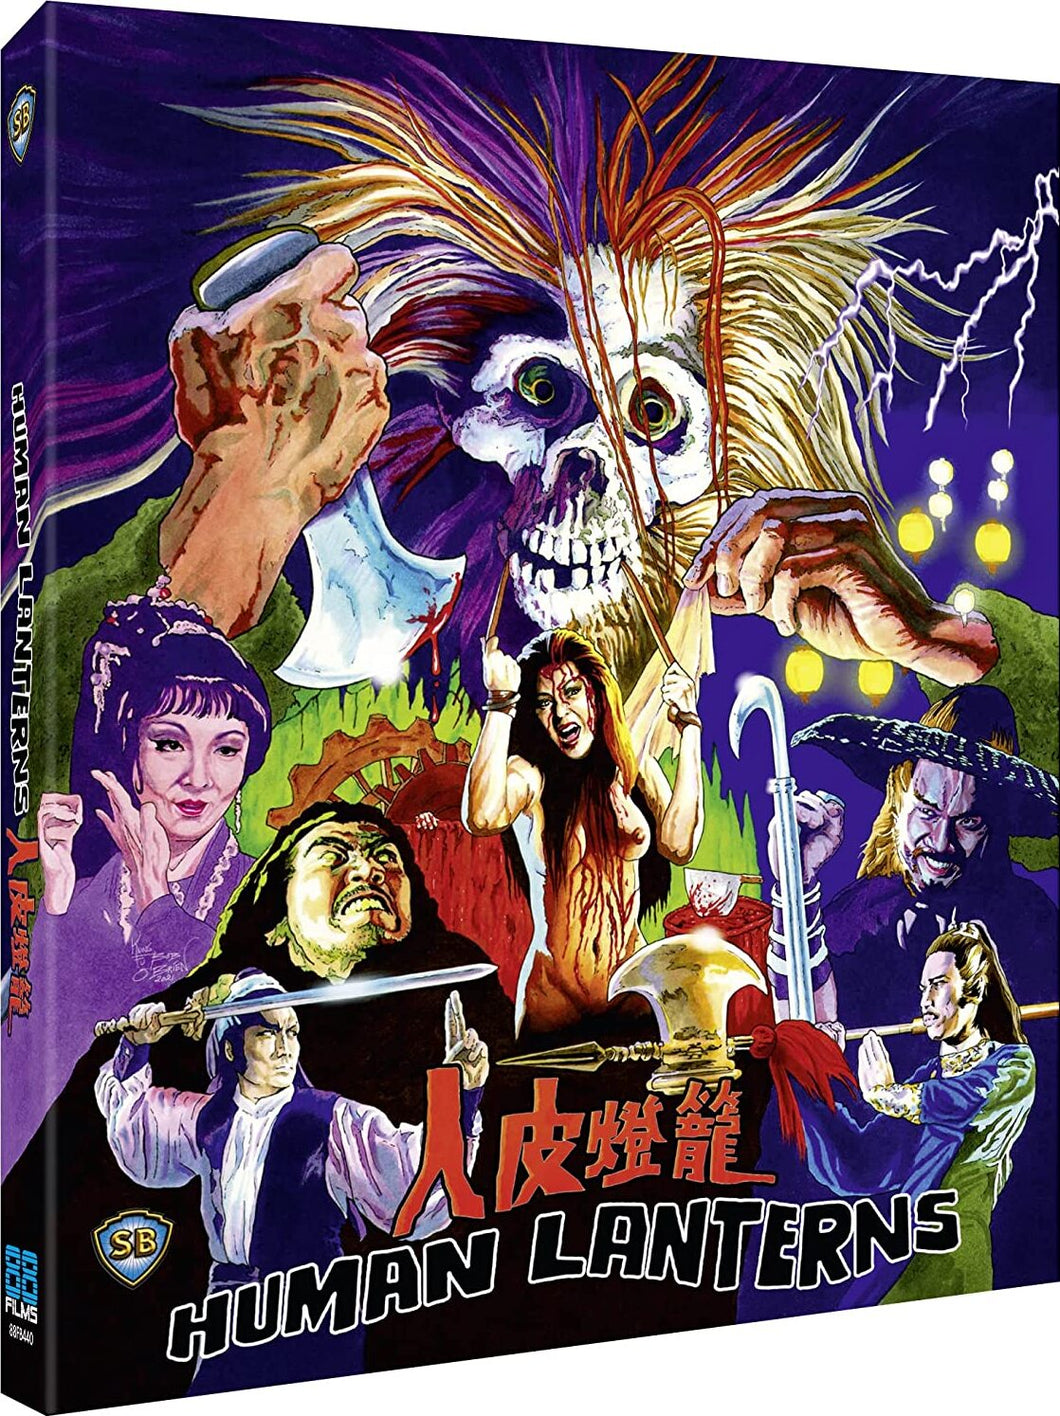 Human Lanterns (1982) de Chung Sun - front cover